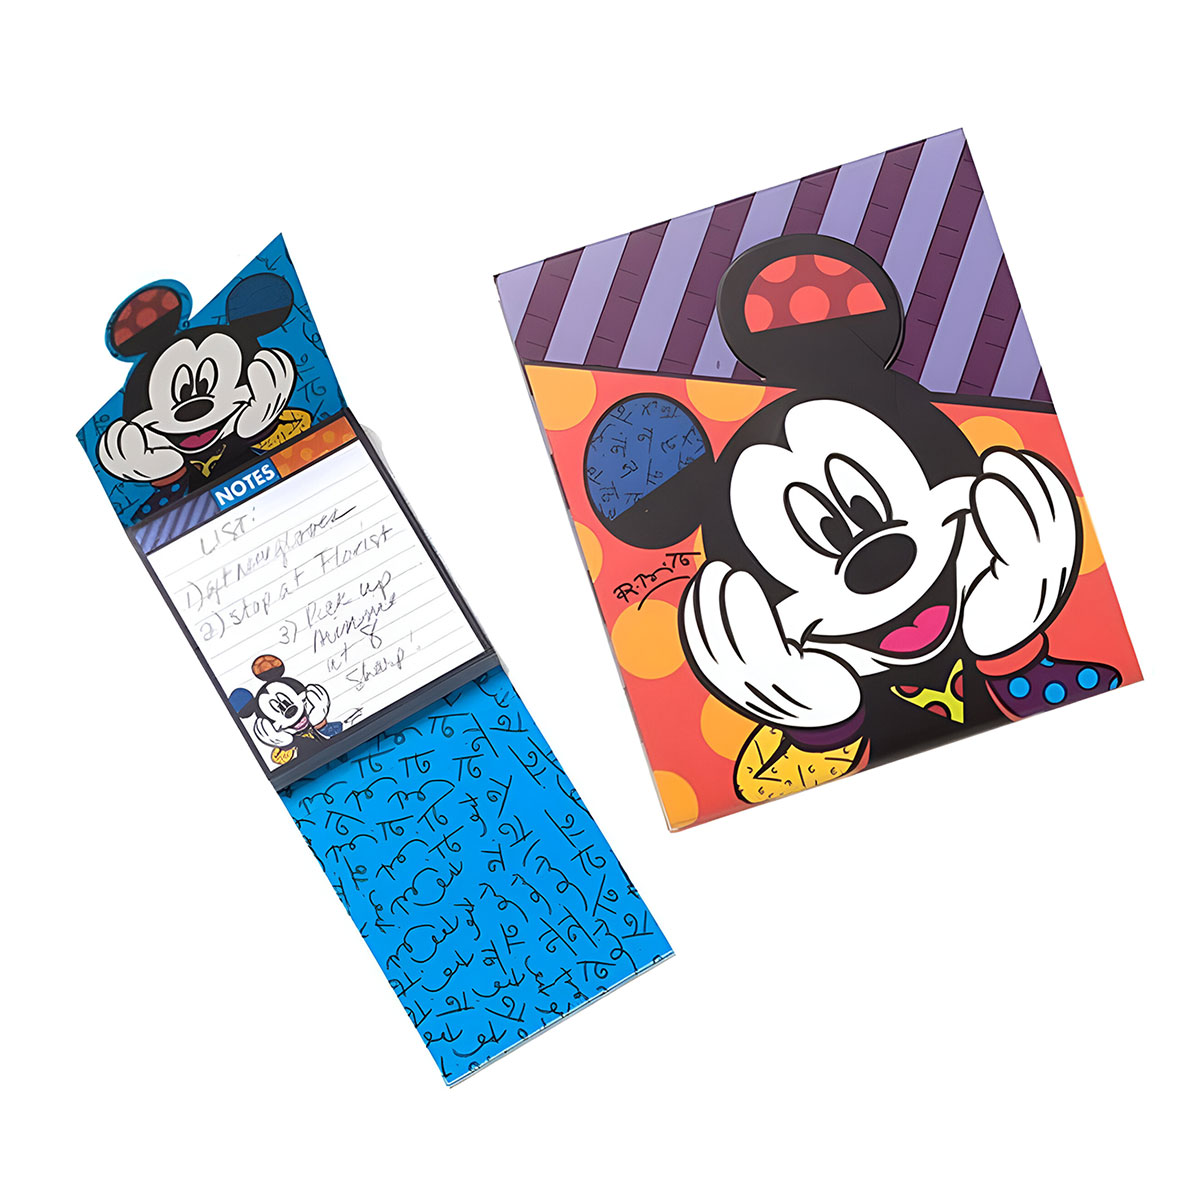 Carnet Disney Bloc note Mickey by Romero Britto